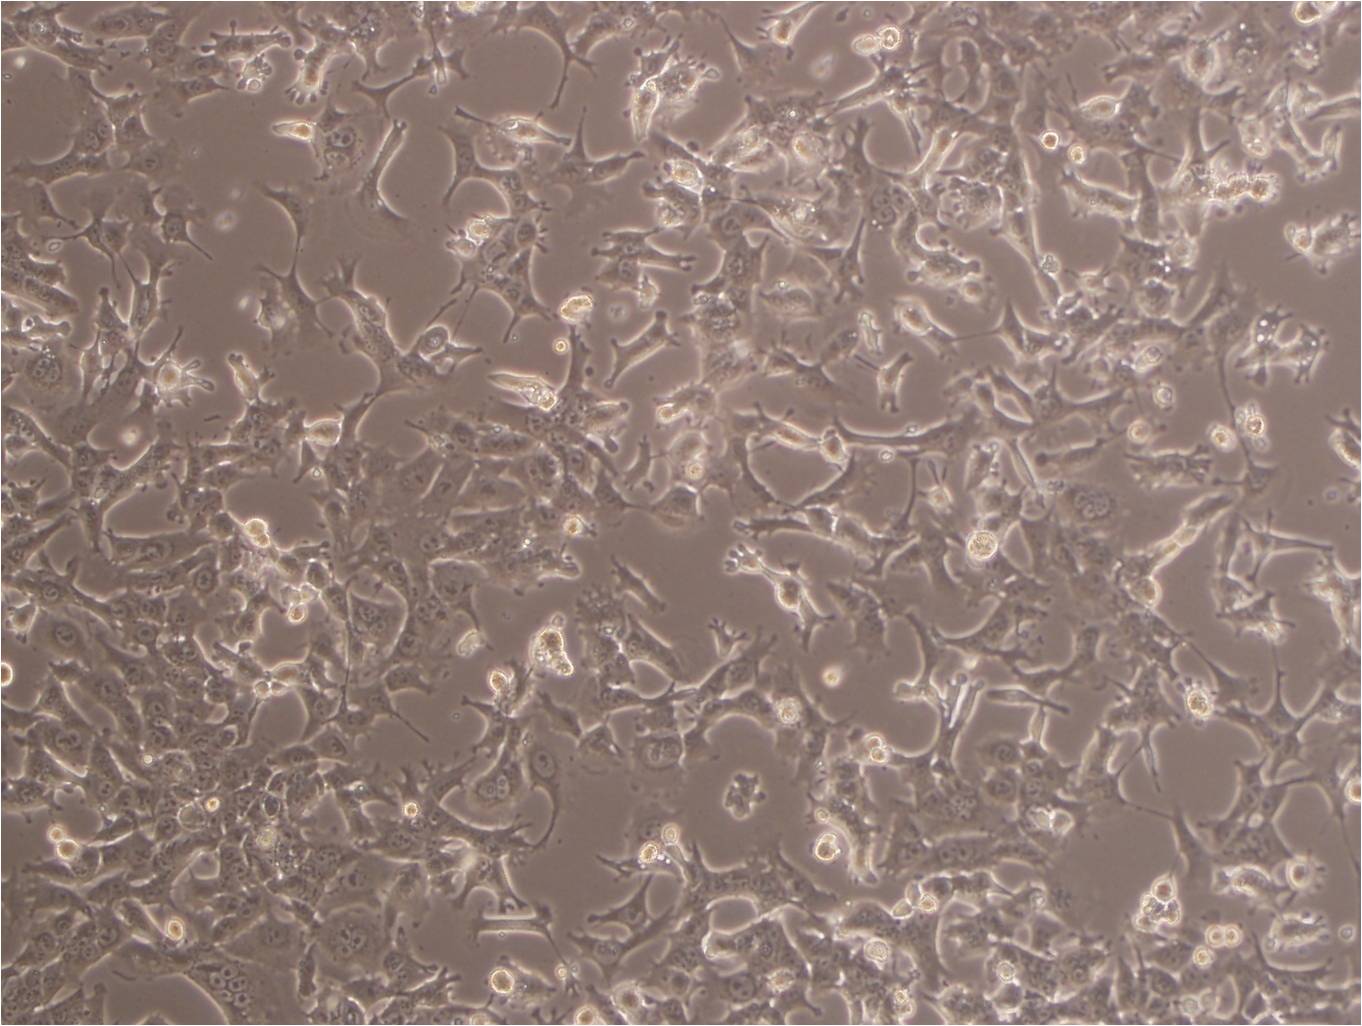 HuLEC-5a Cells|人肺微血管内皮可传代细胞系